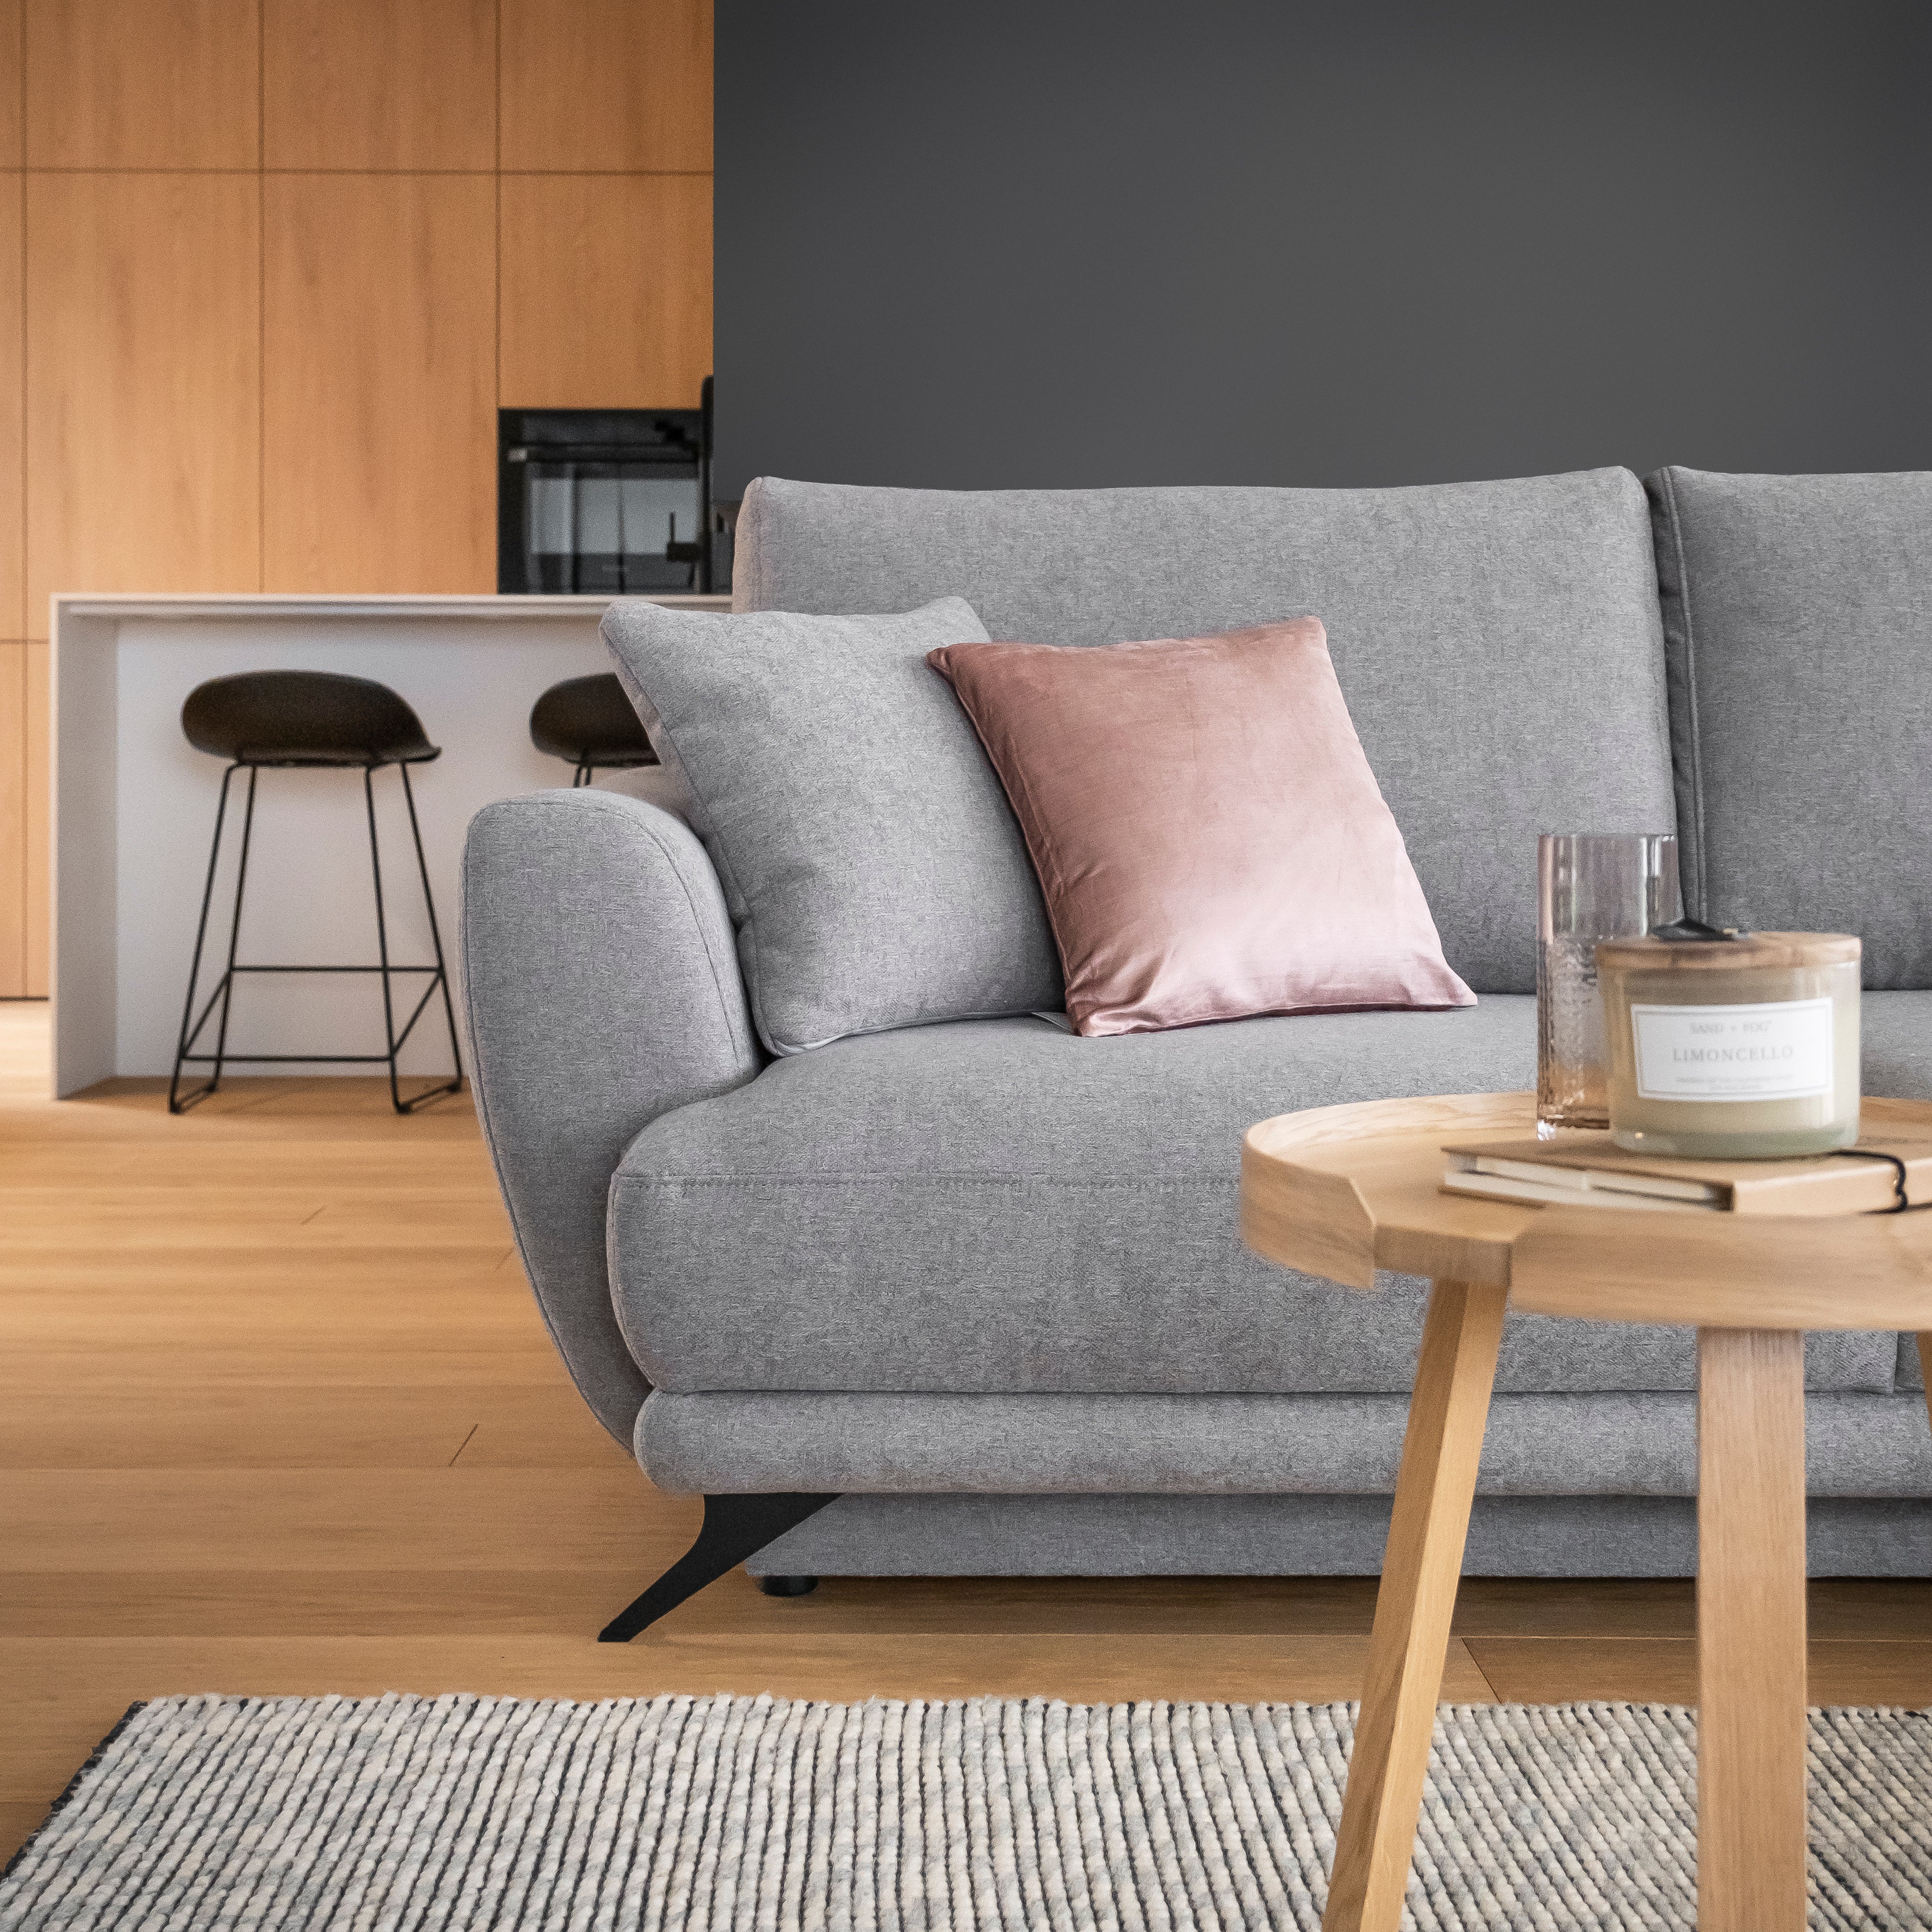 Conoces la cantidad correcta de cojines para el sofá, sillón y cama?